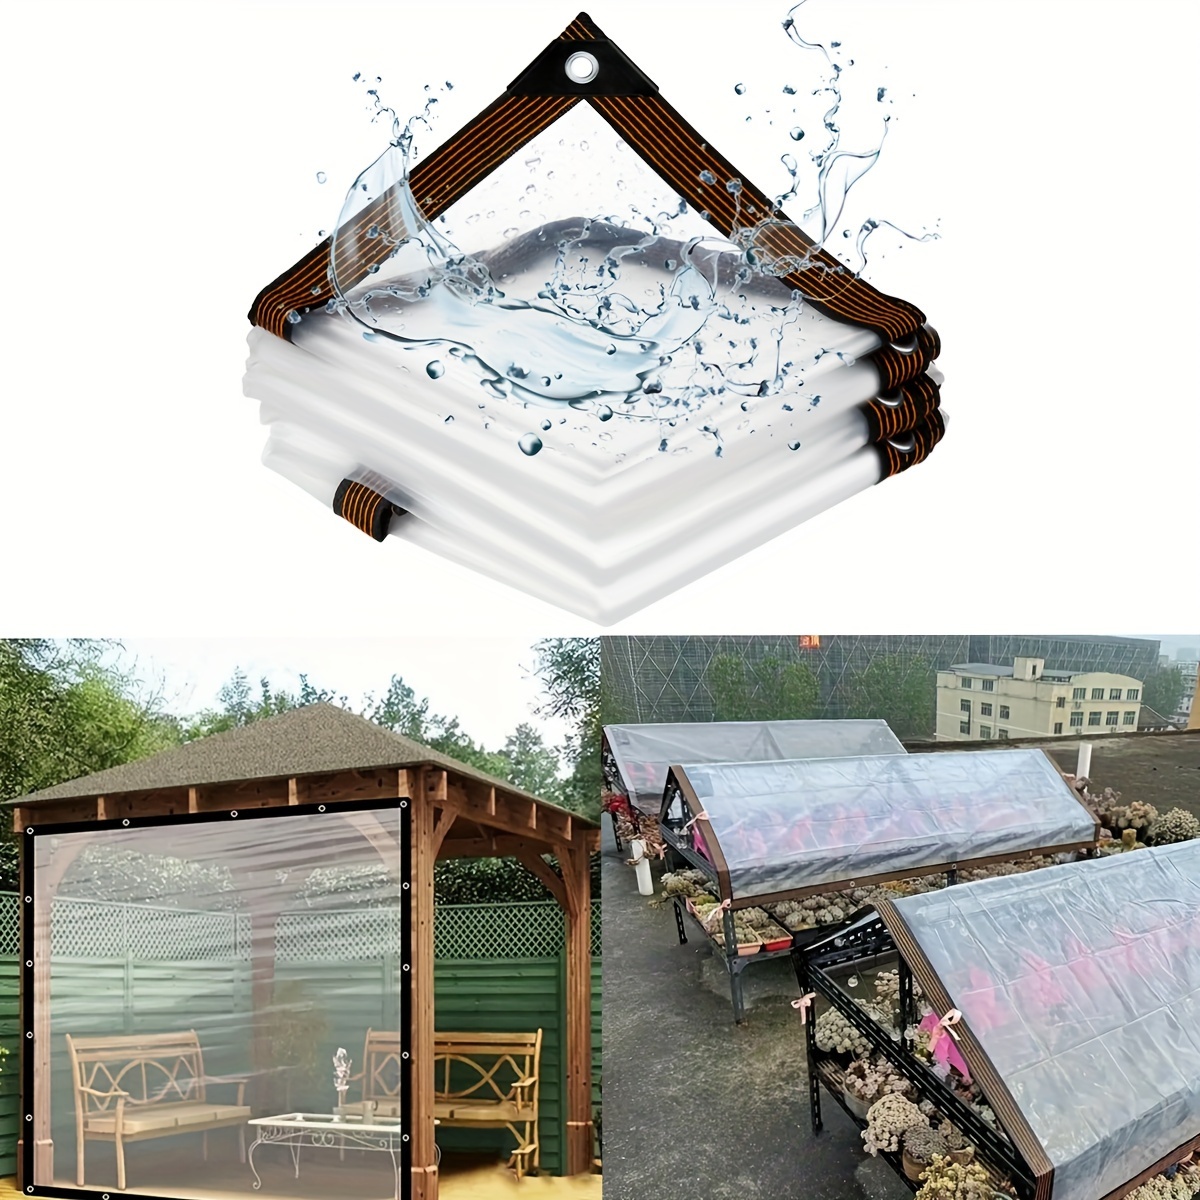 Lona transparente, lona impermeable, lona de vinilo de PVC transparente,  impermeable transparente con ojales, campamento resistente al agua, lluvia